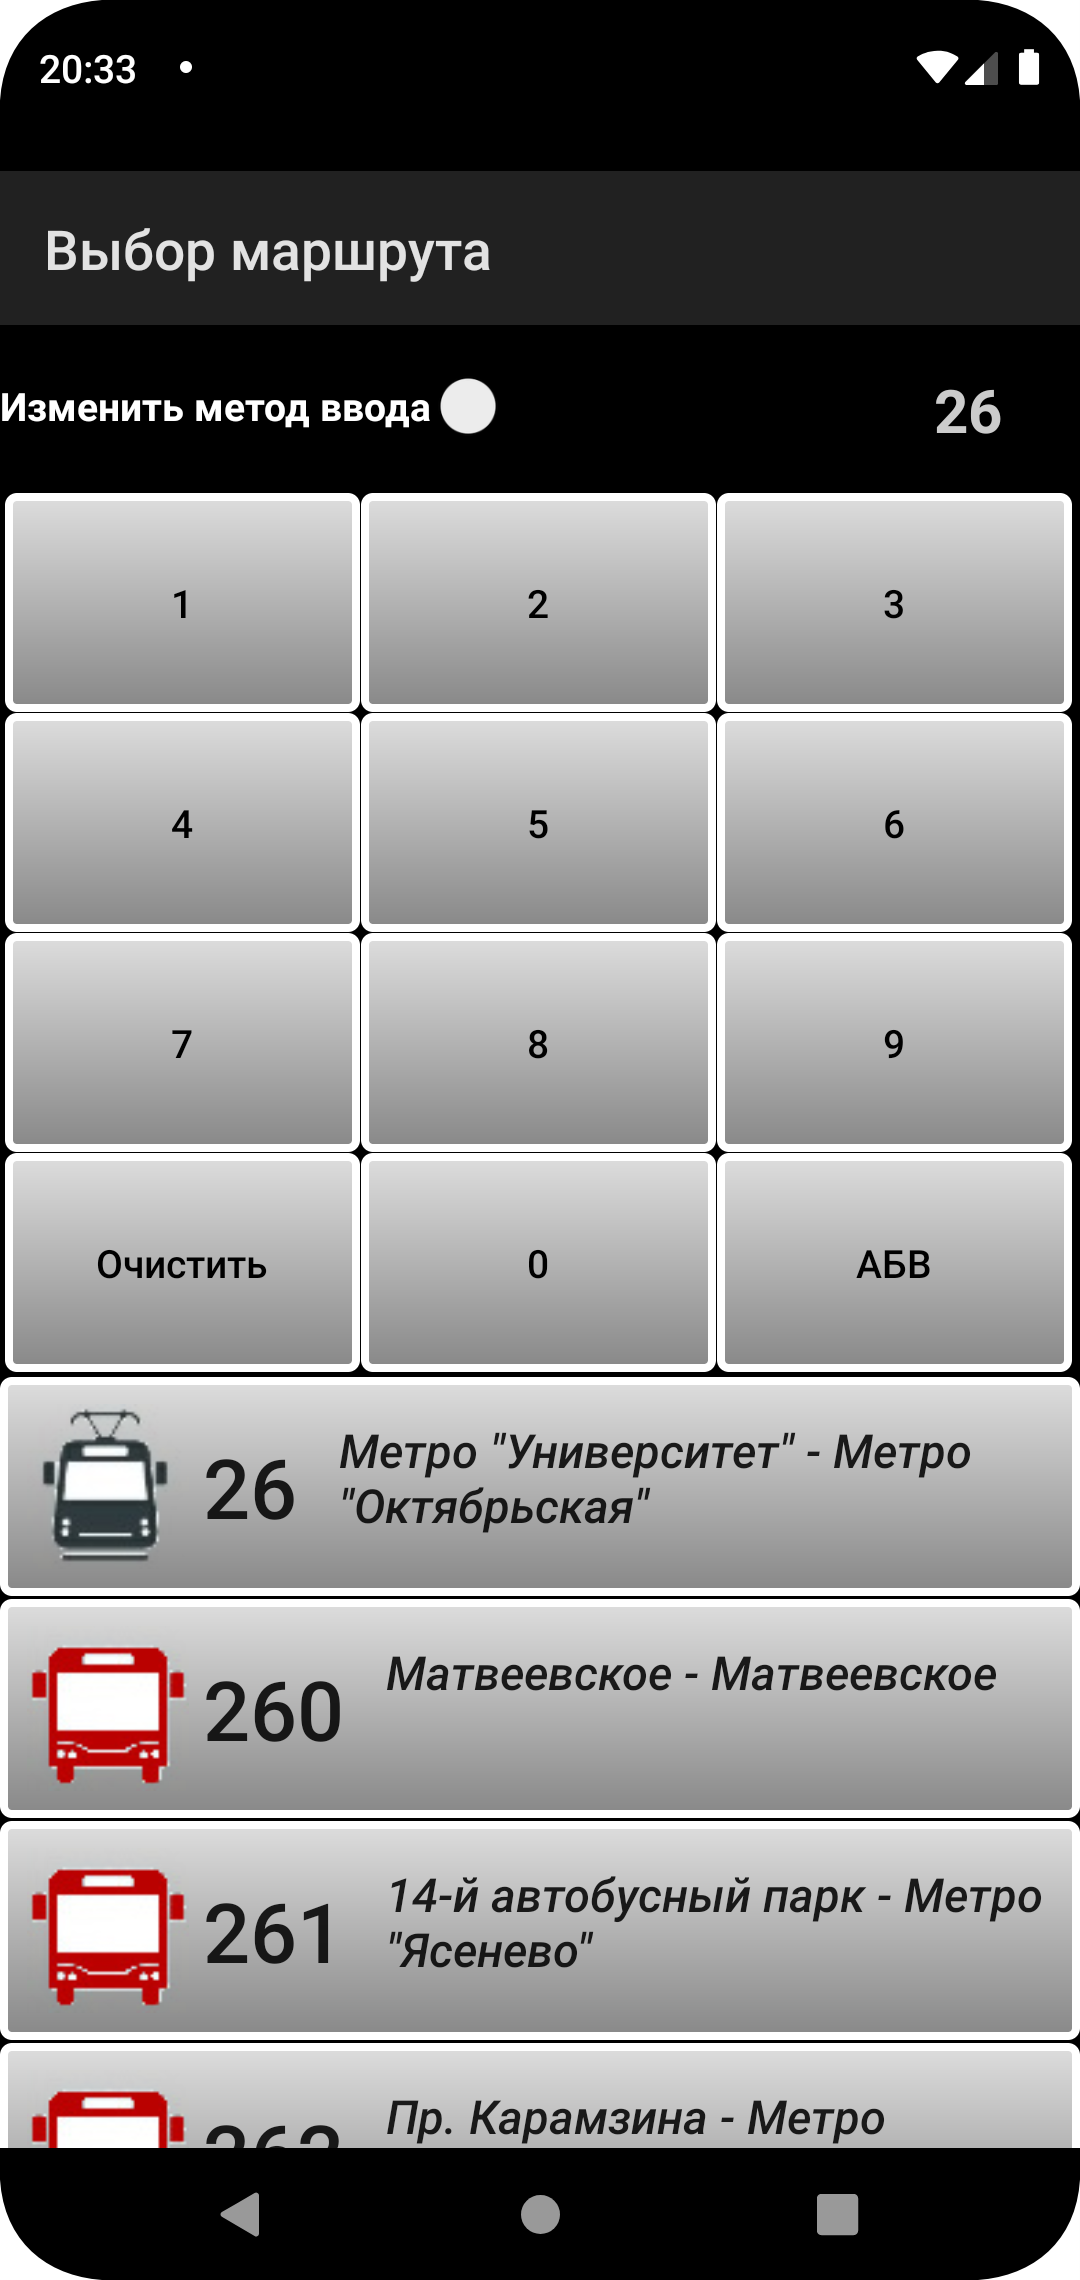 Android application Расписание транспорта Москвы screenshort